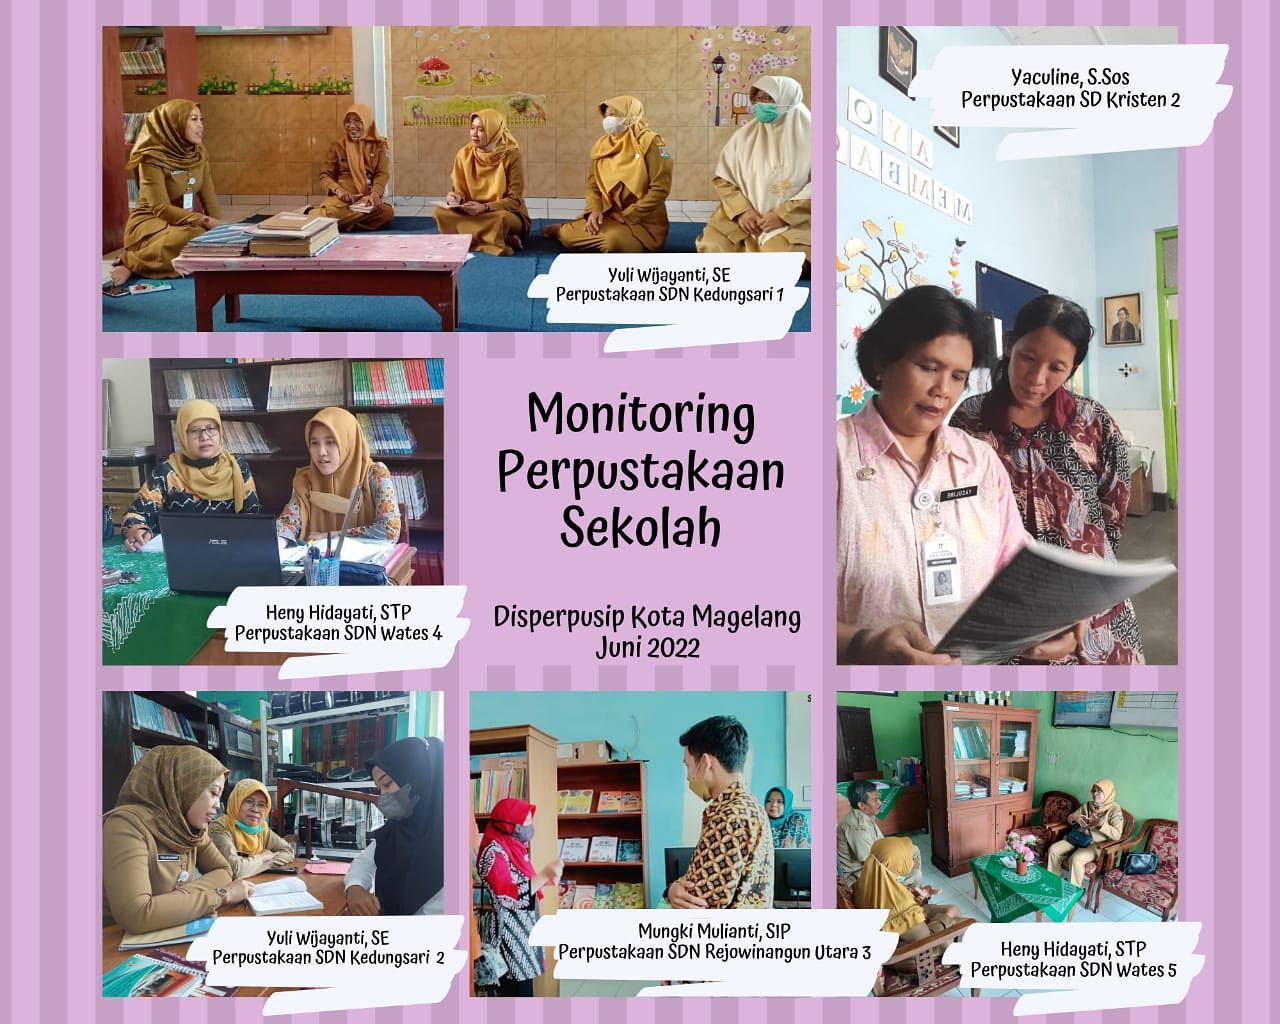 Monitoring Perpustakaan Sekolah Disperpusip Kota Magelang Juni 2022